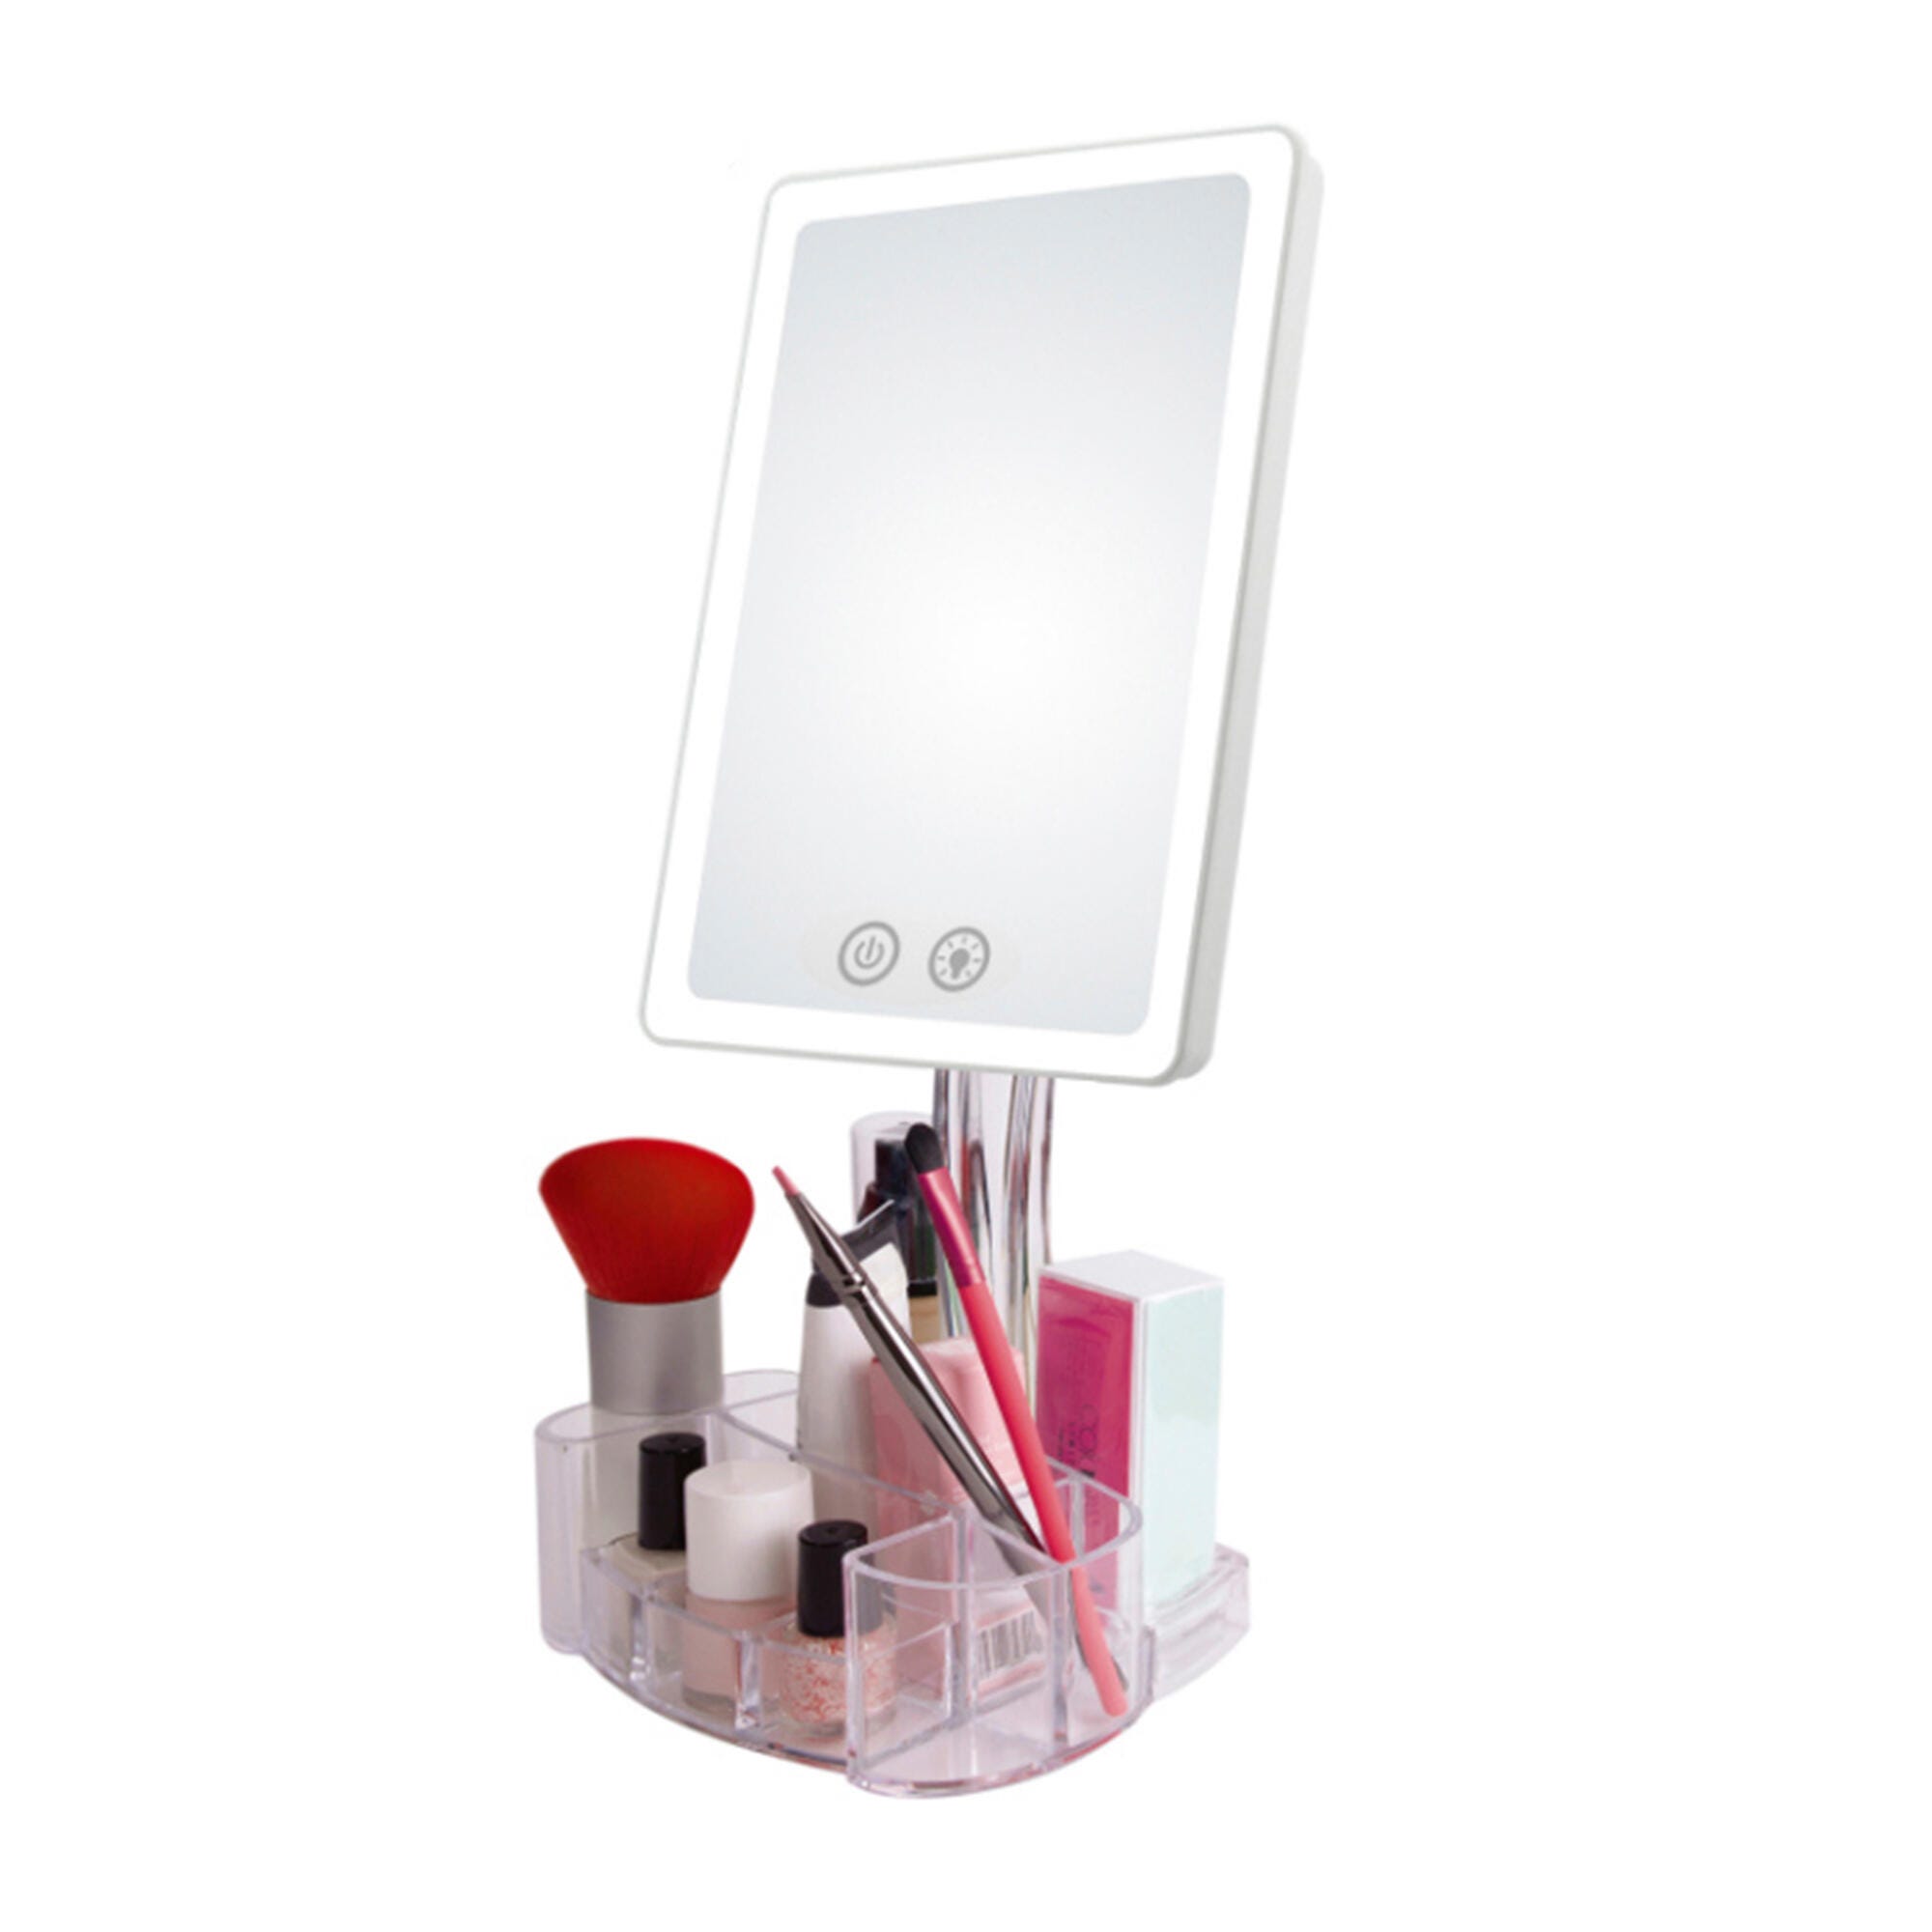 Espejo Iluminado Maquillaje LED 4200ºK Ø14,2Cm Recargable